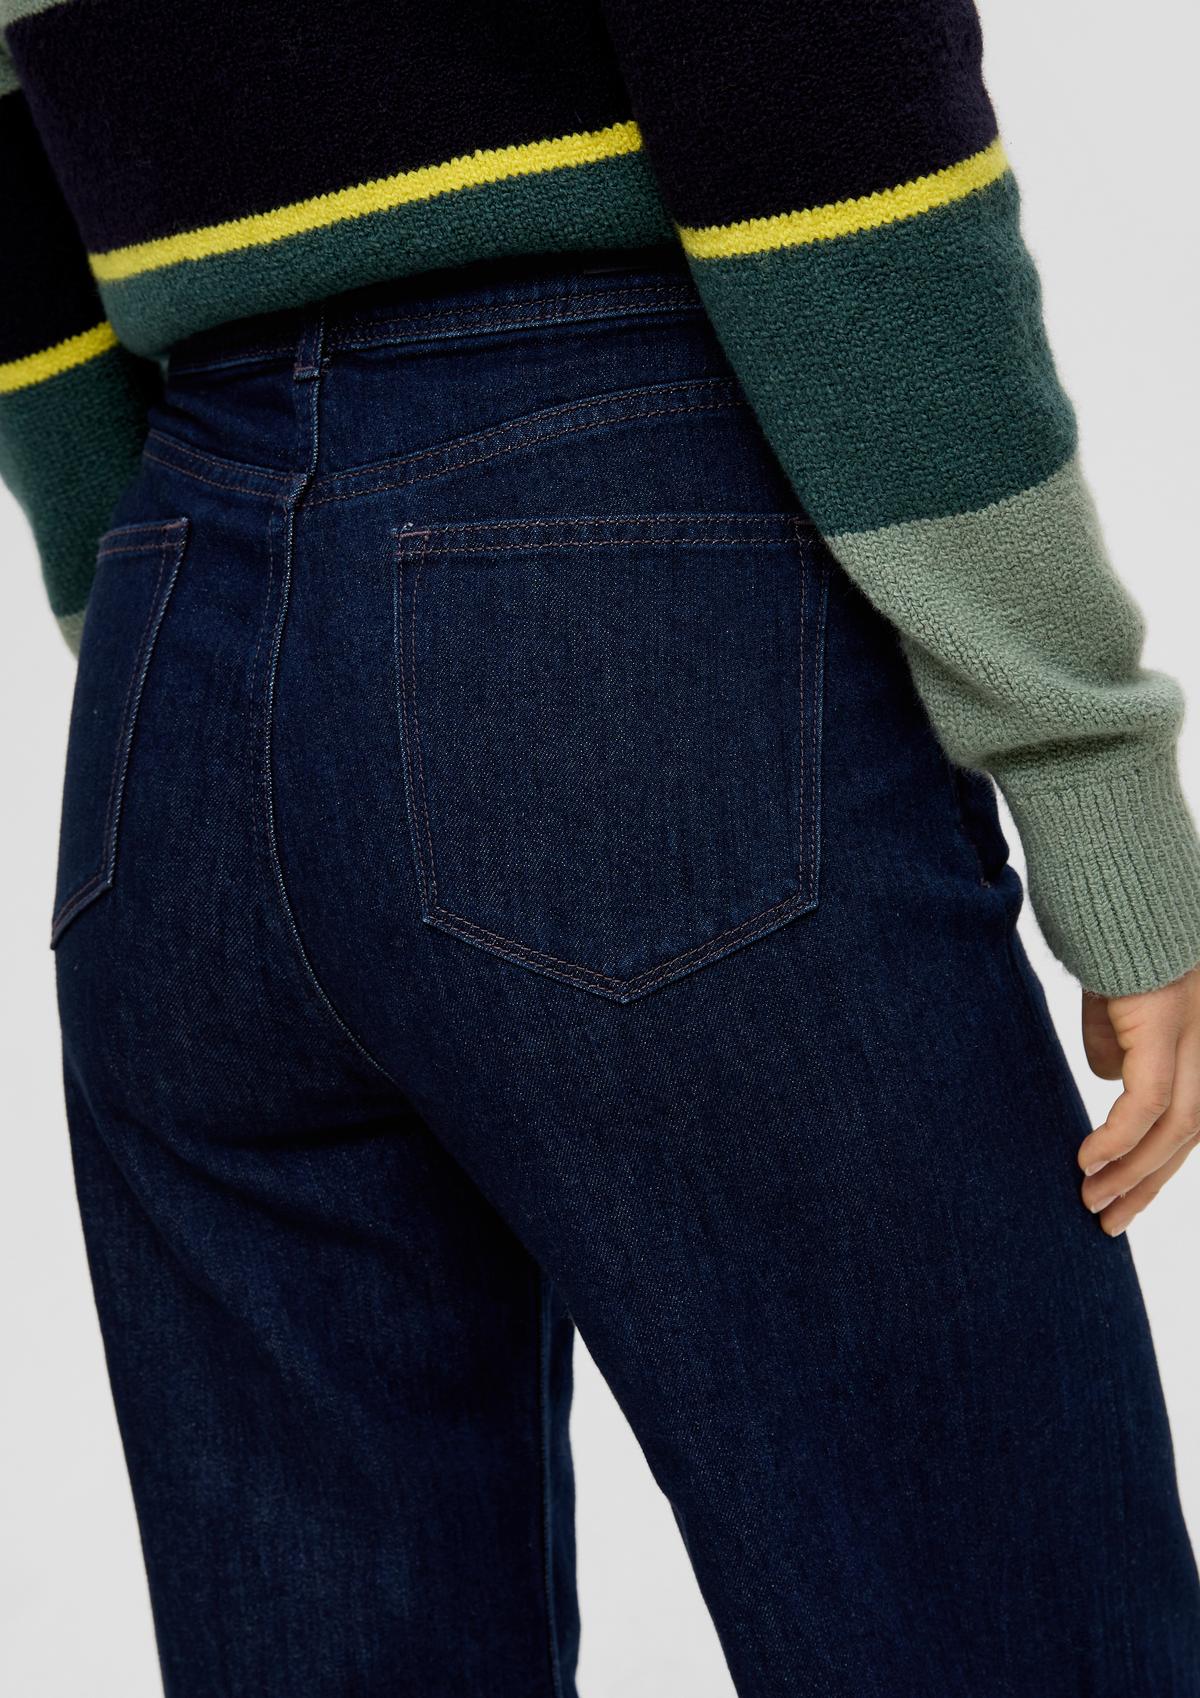 s.Oliver Suri jeans / regular fit / high rise / wide leg